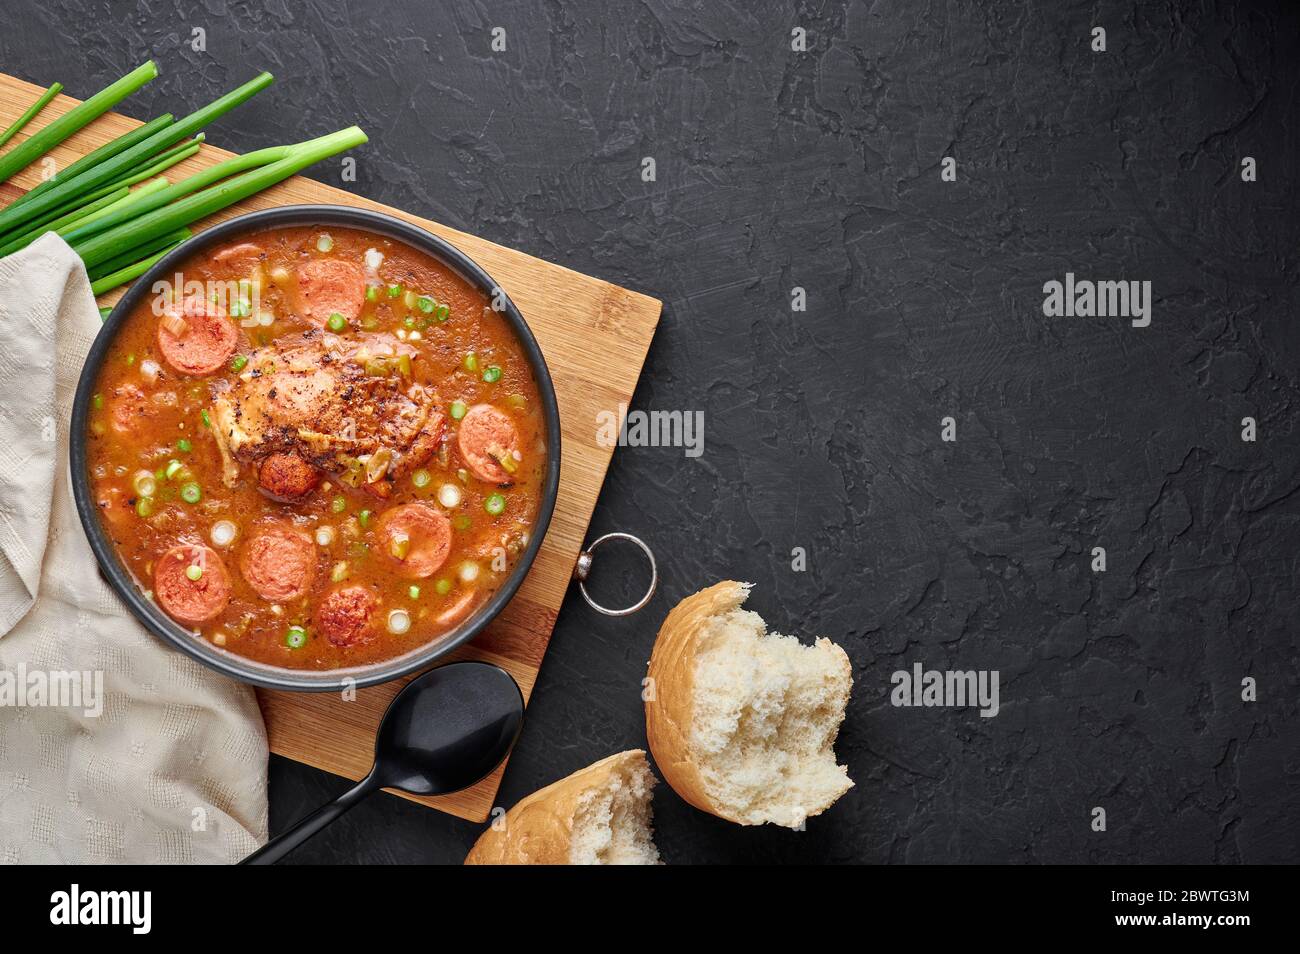 Hähnchen und Wurst Gumbo Suppe in schwarzer Schüssel auf dunklem Schiefer Hintergrund. Gumbo ist louisiana cajun Cuisine Suppe mit Roux. Amerikanische Küche in den USA. Traditionelles E Stockfoto